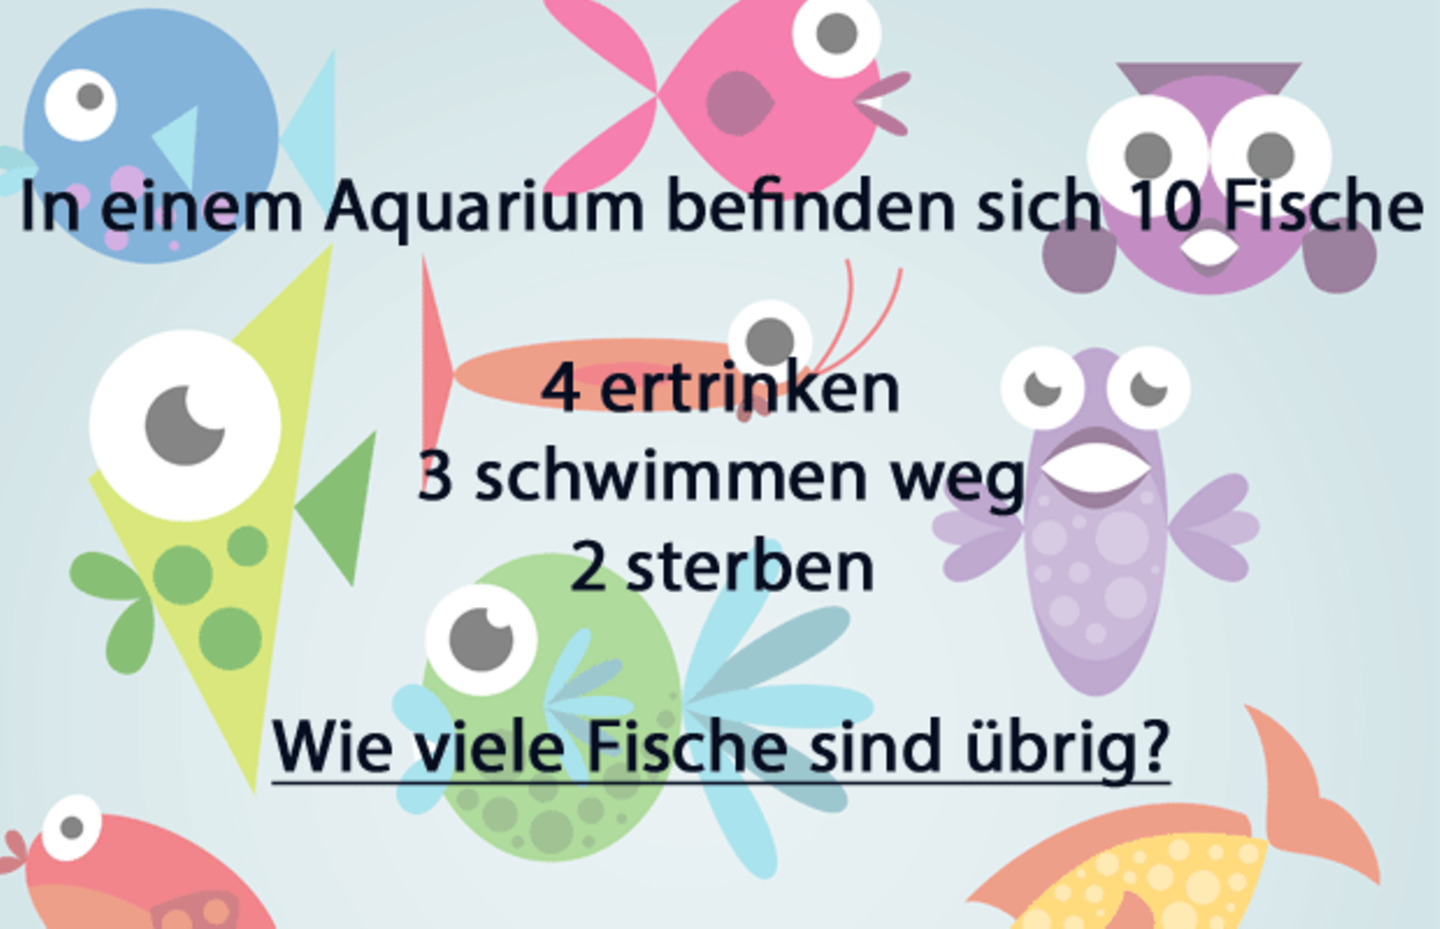 Die meisten Menschen können dieses Fisch-Rätsel nicht lösen - schaffst du es?